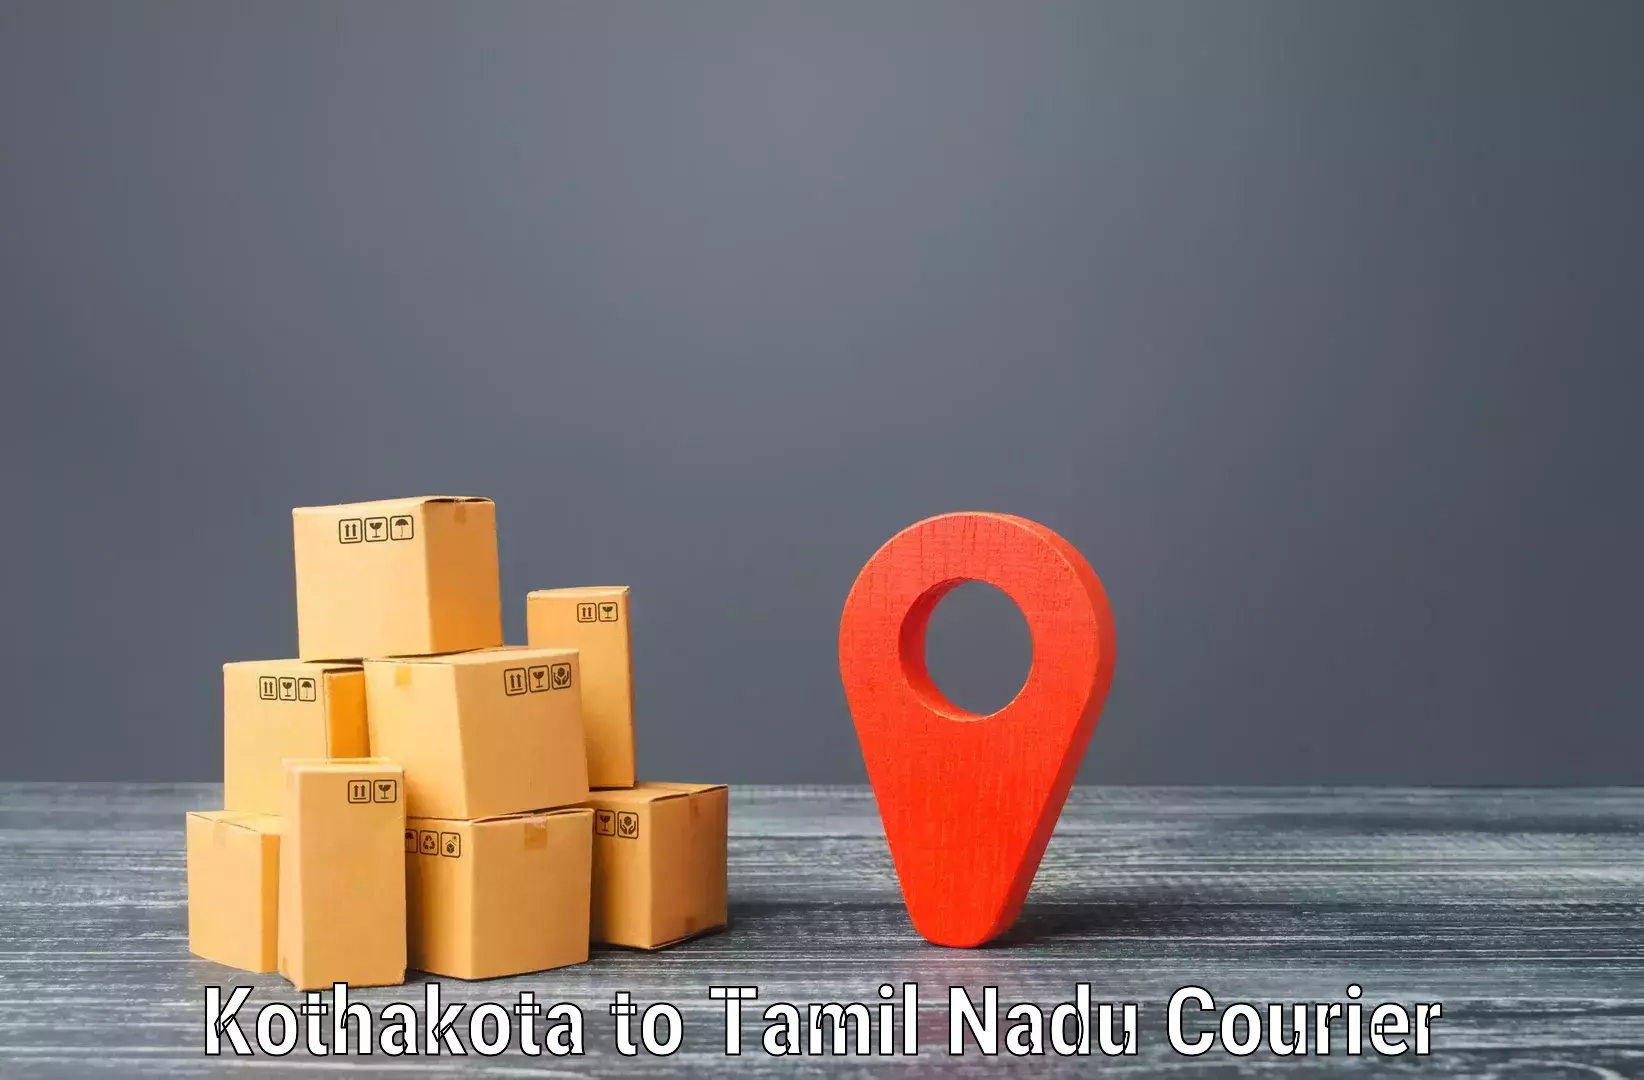 Efficient parcel tracking Kothakota to Rathinasabapathy Puram